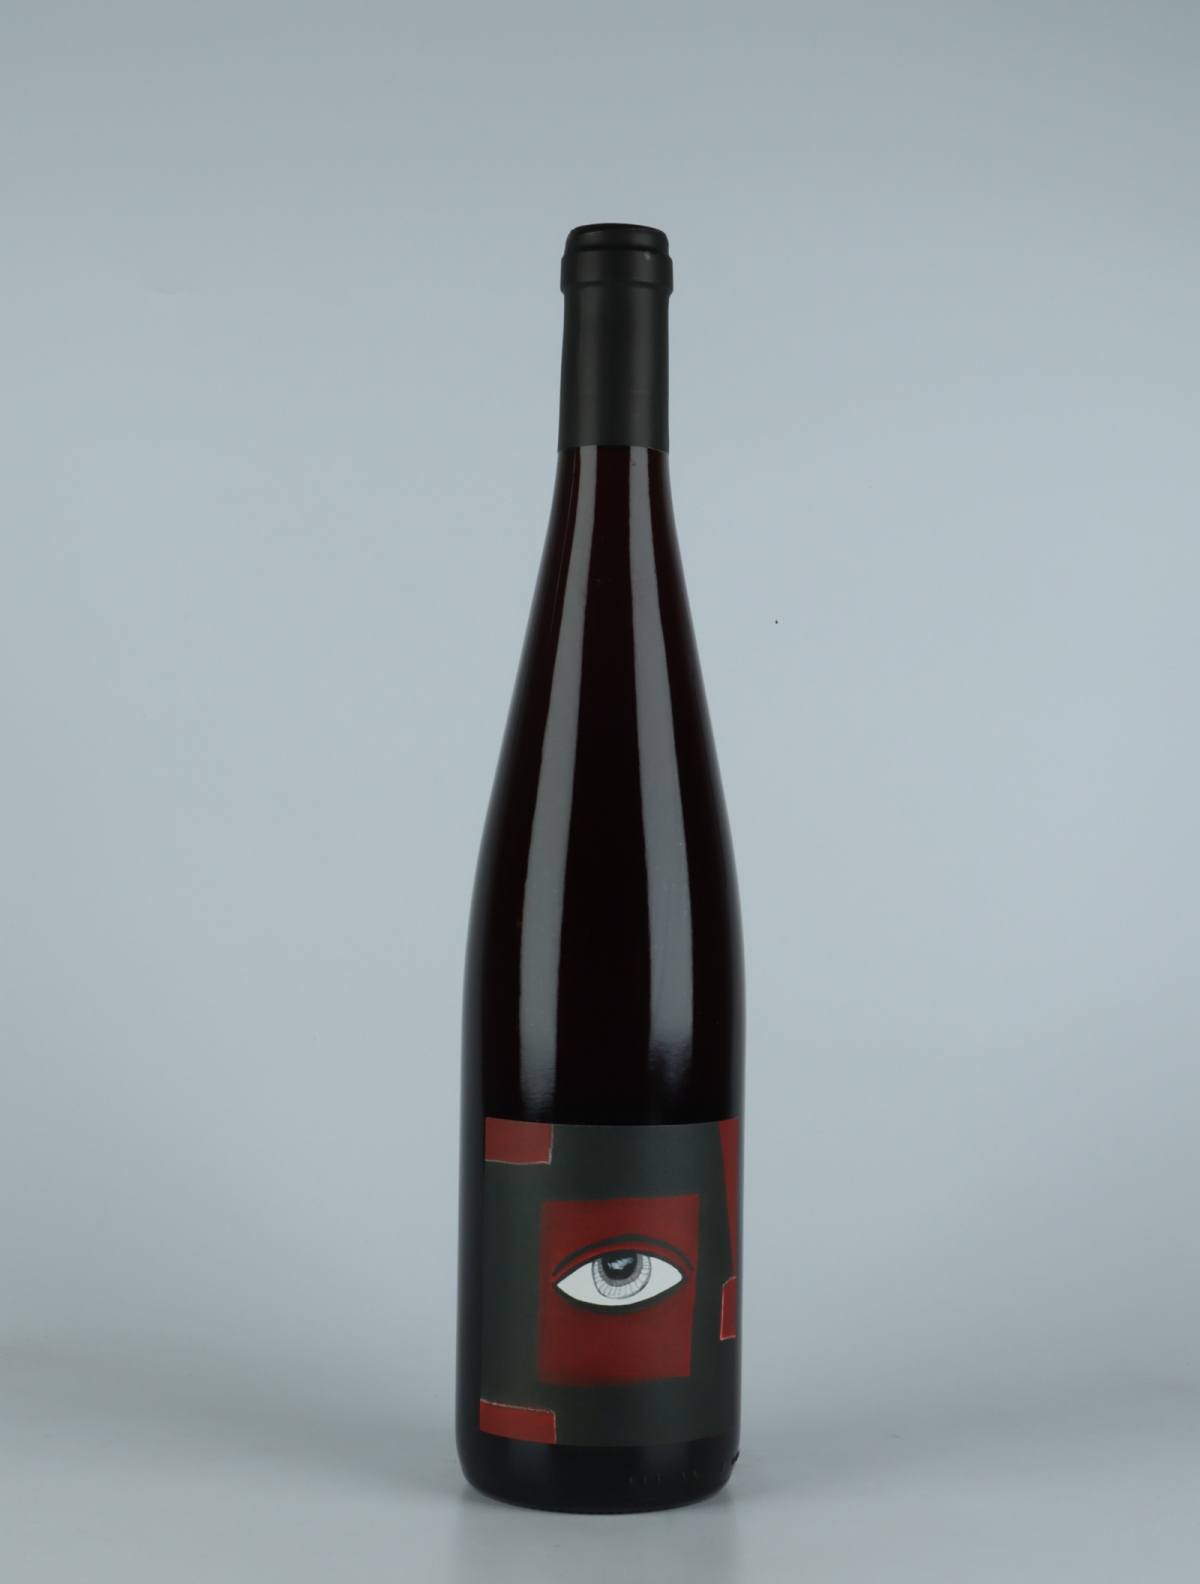 En flaske 2021 Pinot Noir Rødvin fra Domaine Rietsch, Alsace i Frankrig